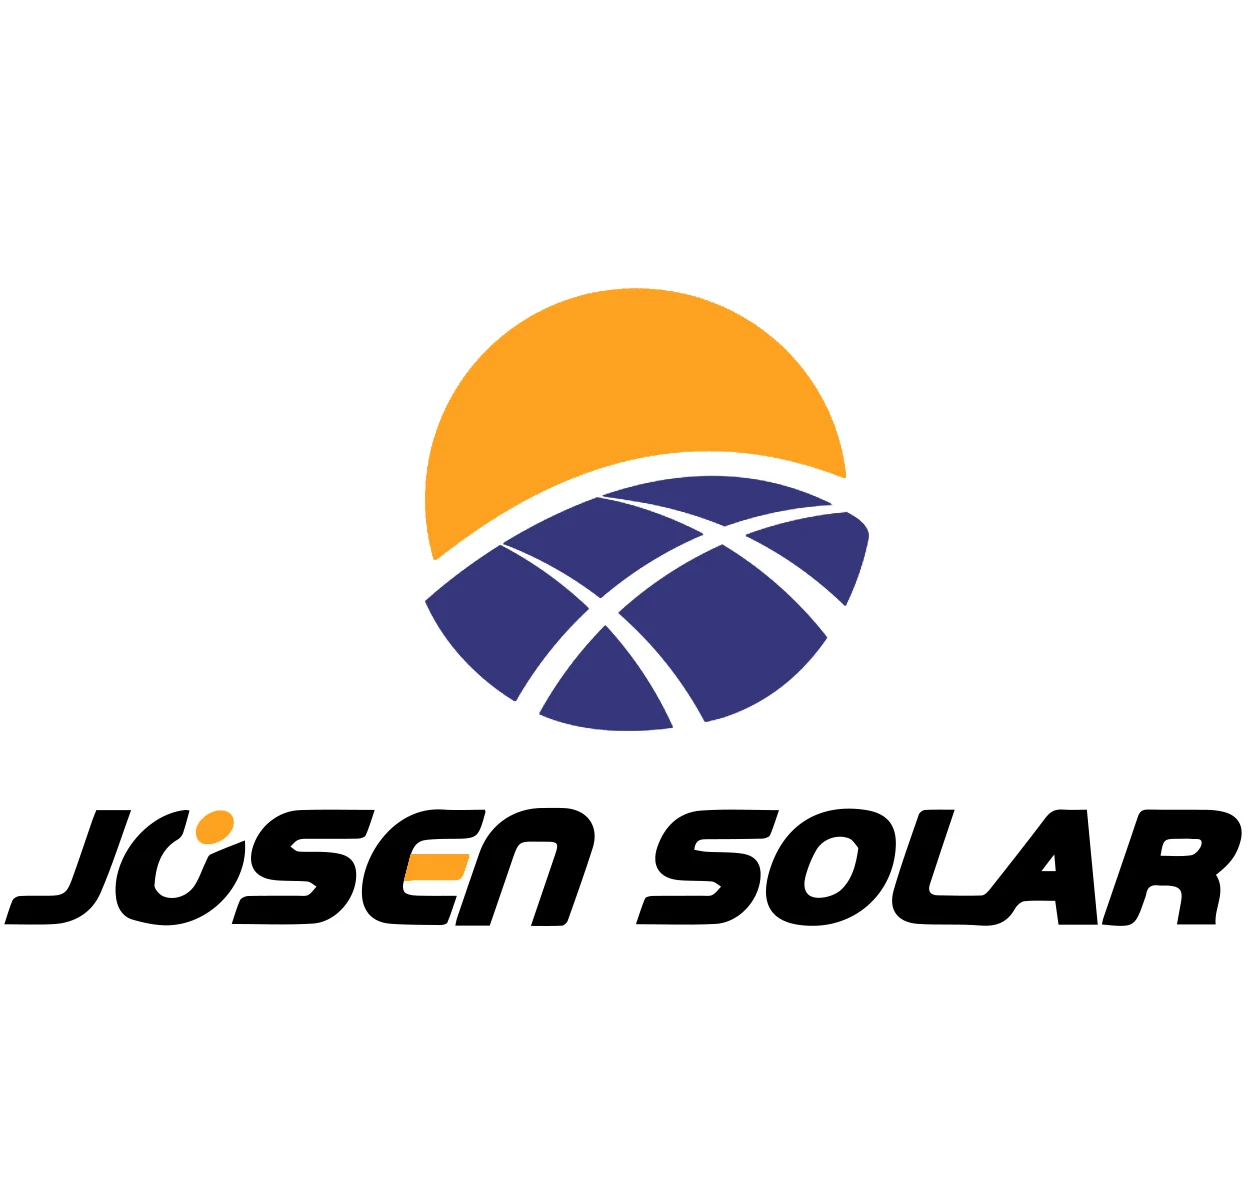 Josen Energy Technology (shenzhen) Co., Ltd. - Solar Panel, Solar Inverter